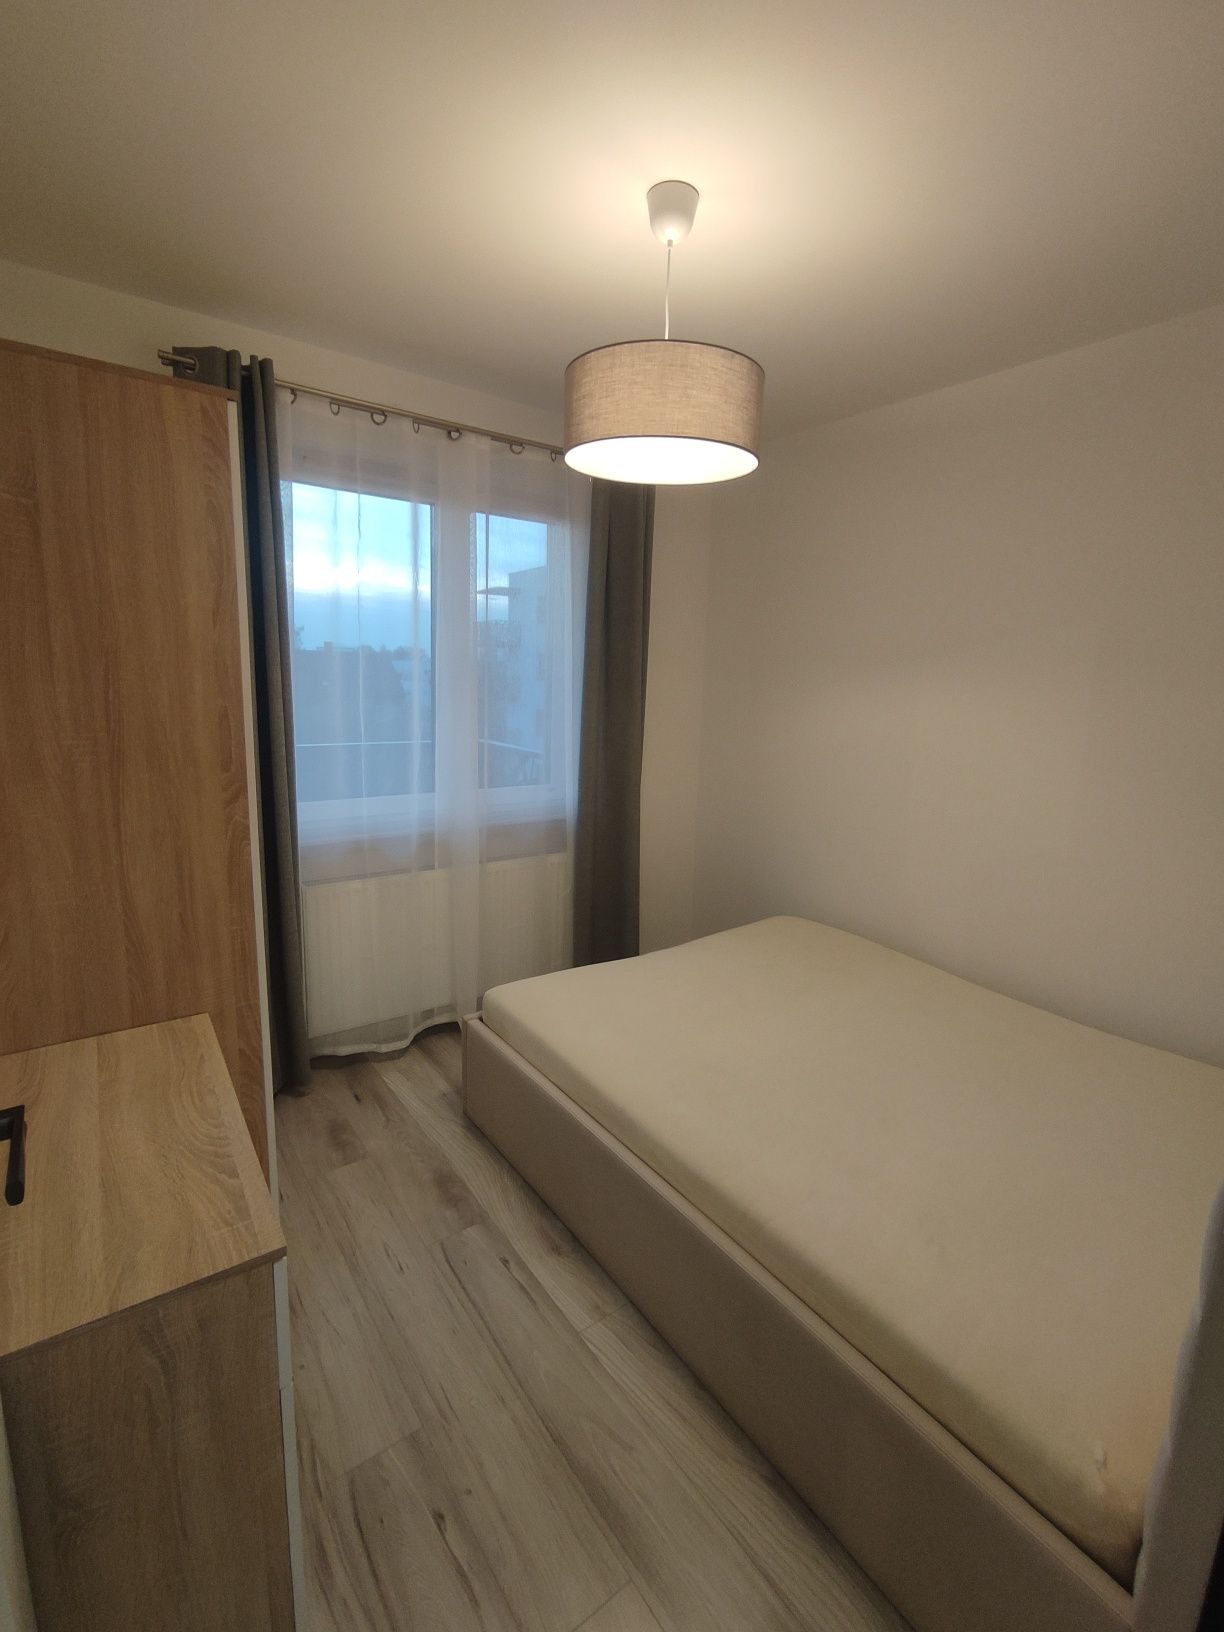 Mieszkanie 2 pokojowe nowe  (33 m2) - do wynajęcia Sosnowiec